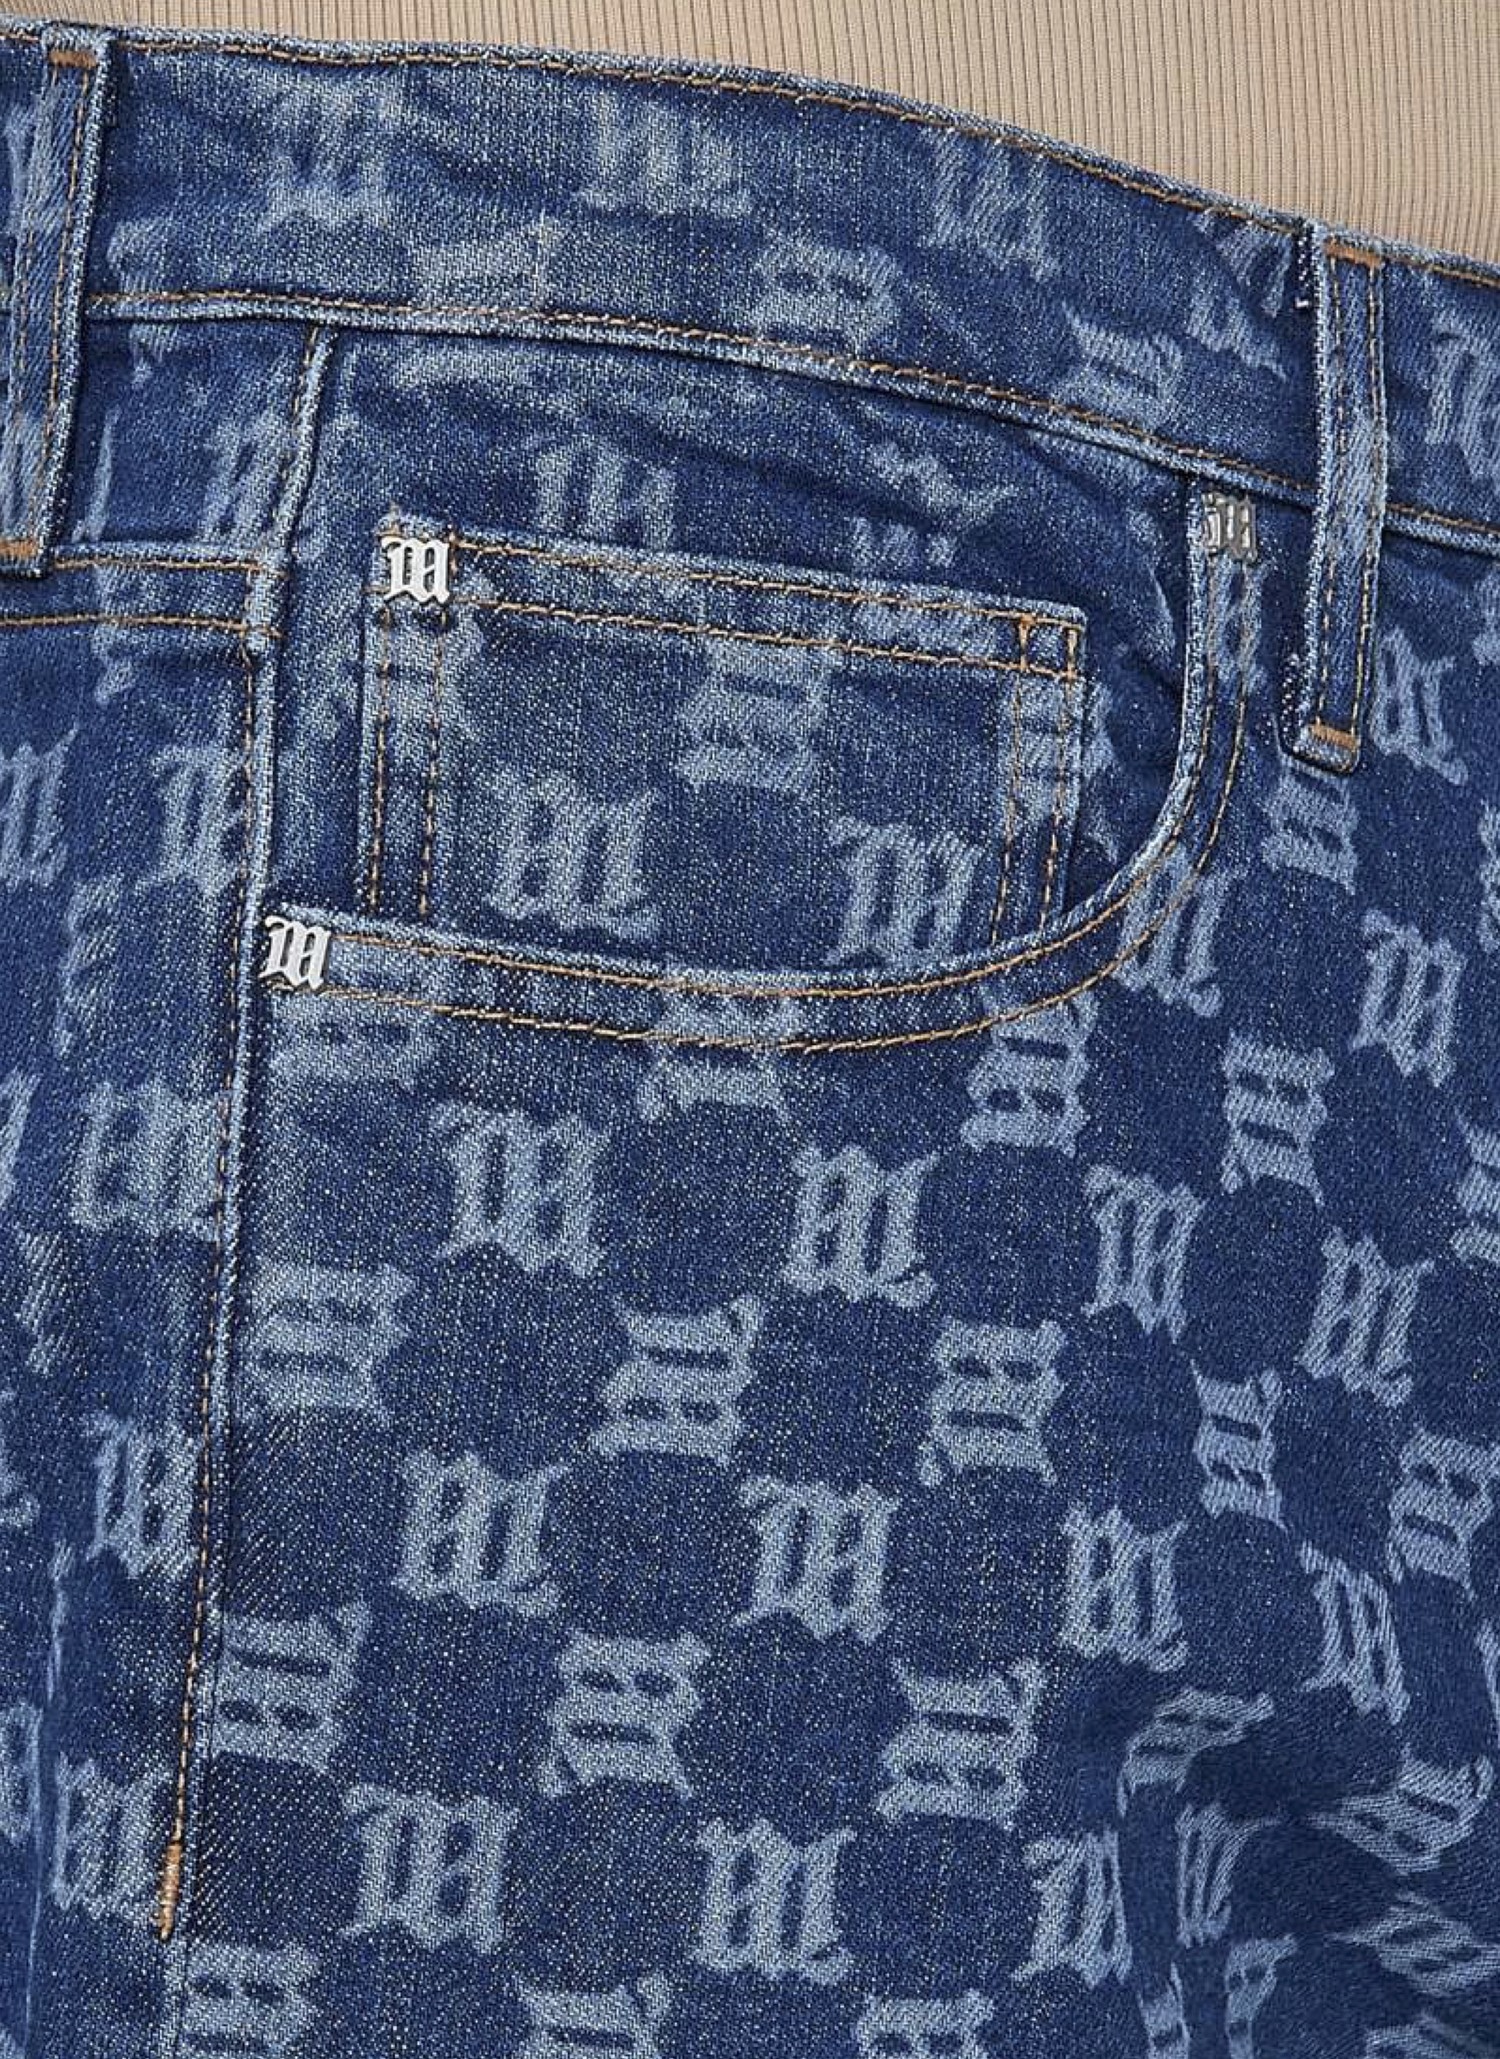 misbhv monogram jeans